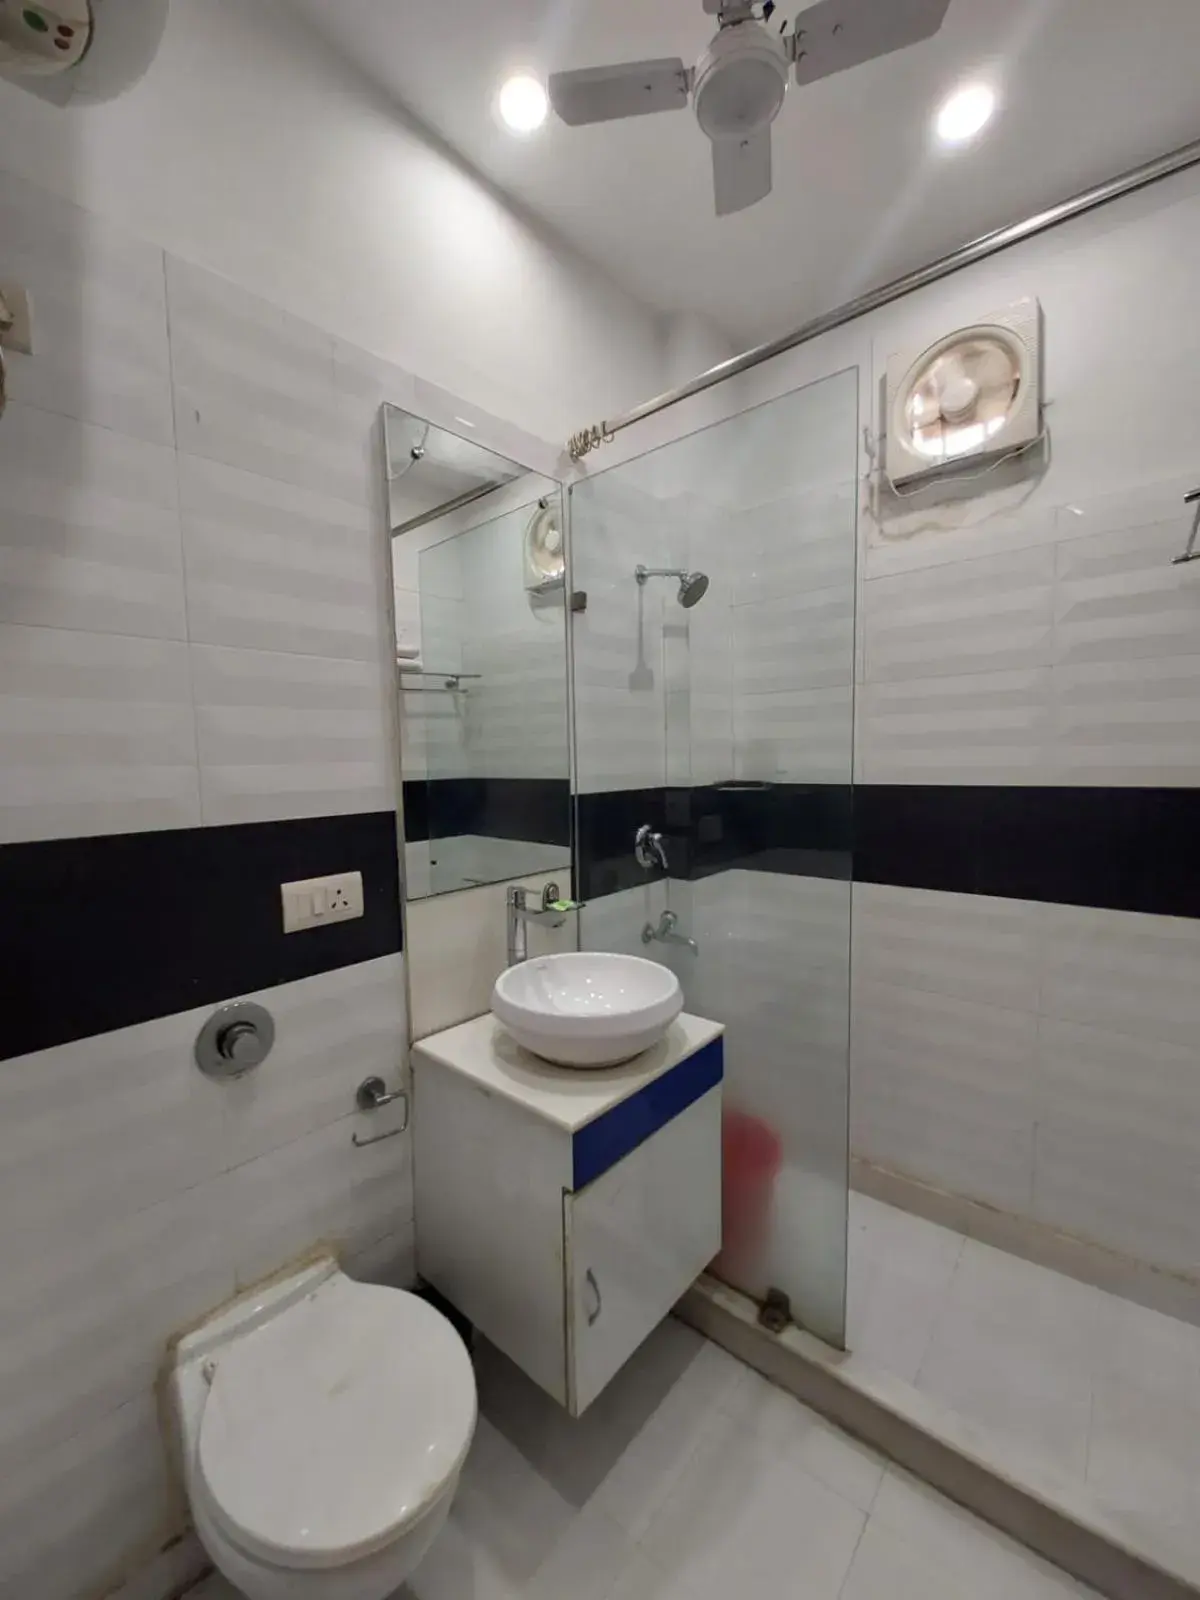 Bathroom in Hotel Shanti Palace West Patel Nagar